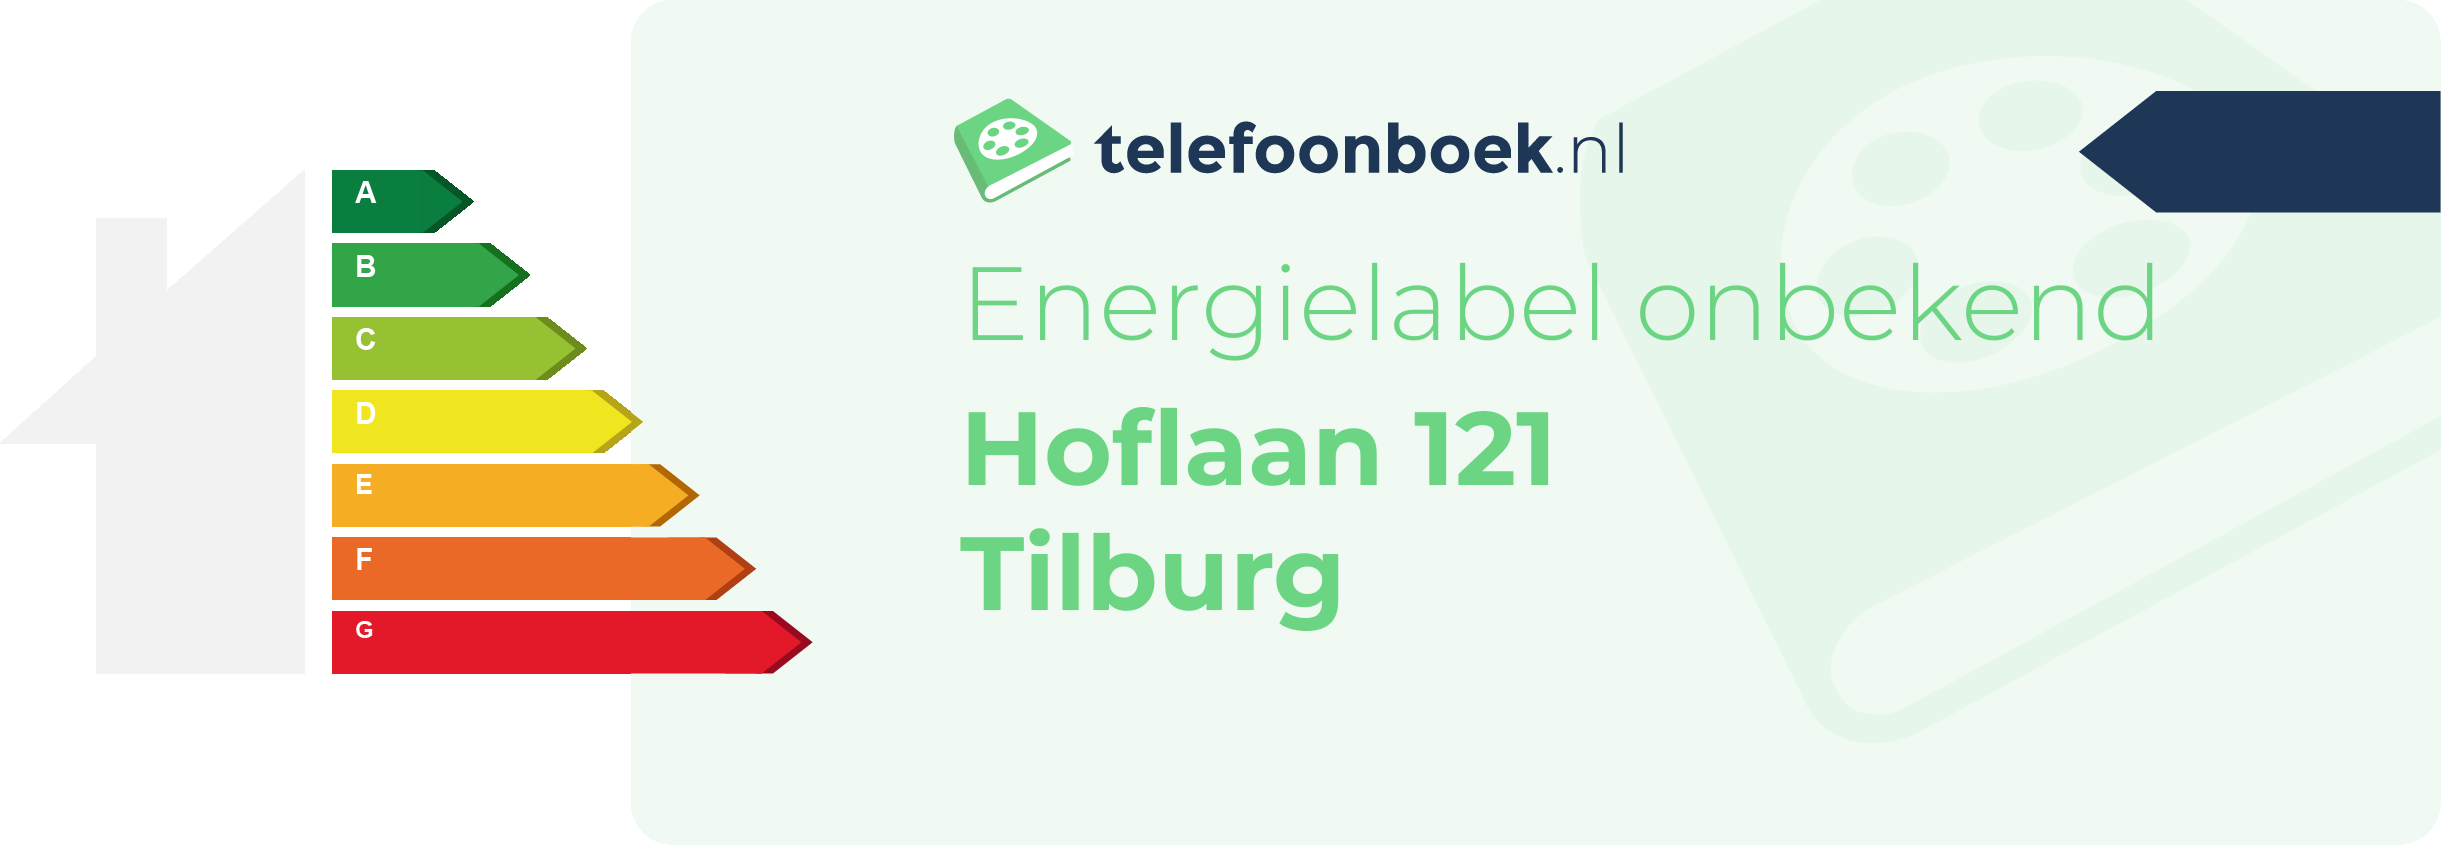 Energielabel Hoflaan 121 Tilburg